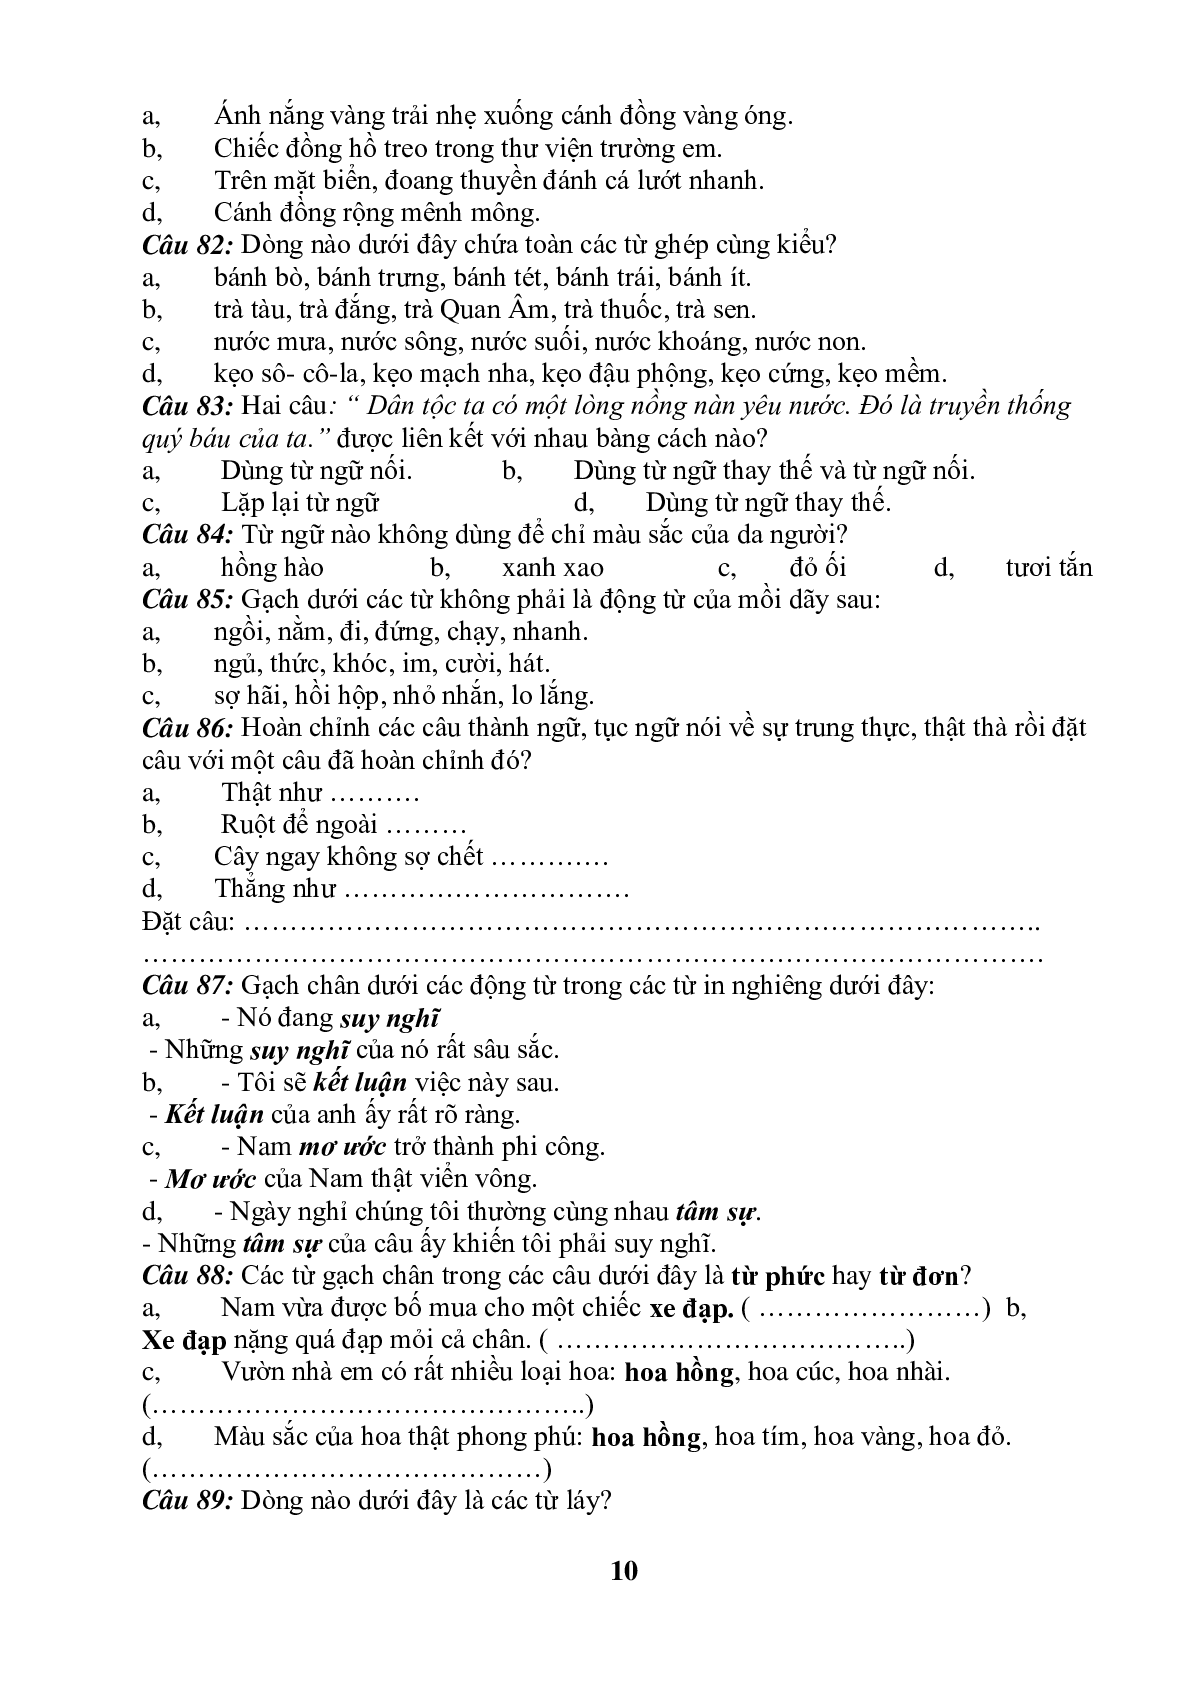 99 câu trắc nghiệm bồi dưỡng HSG môn Tiếng Việt lớp 5 (trang 10)